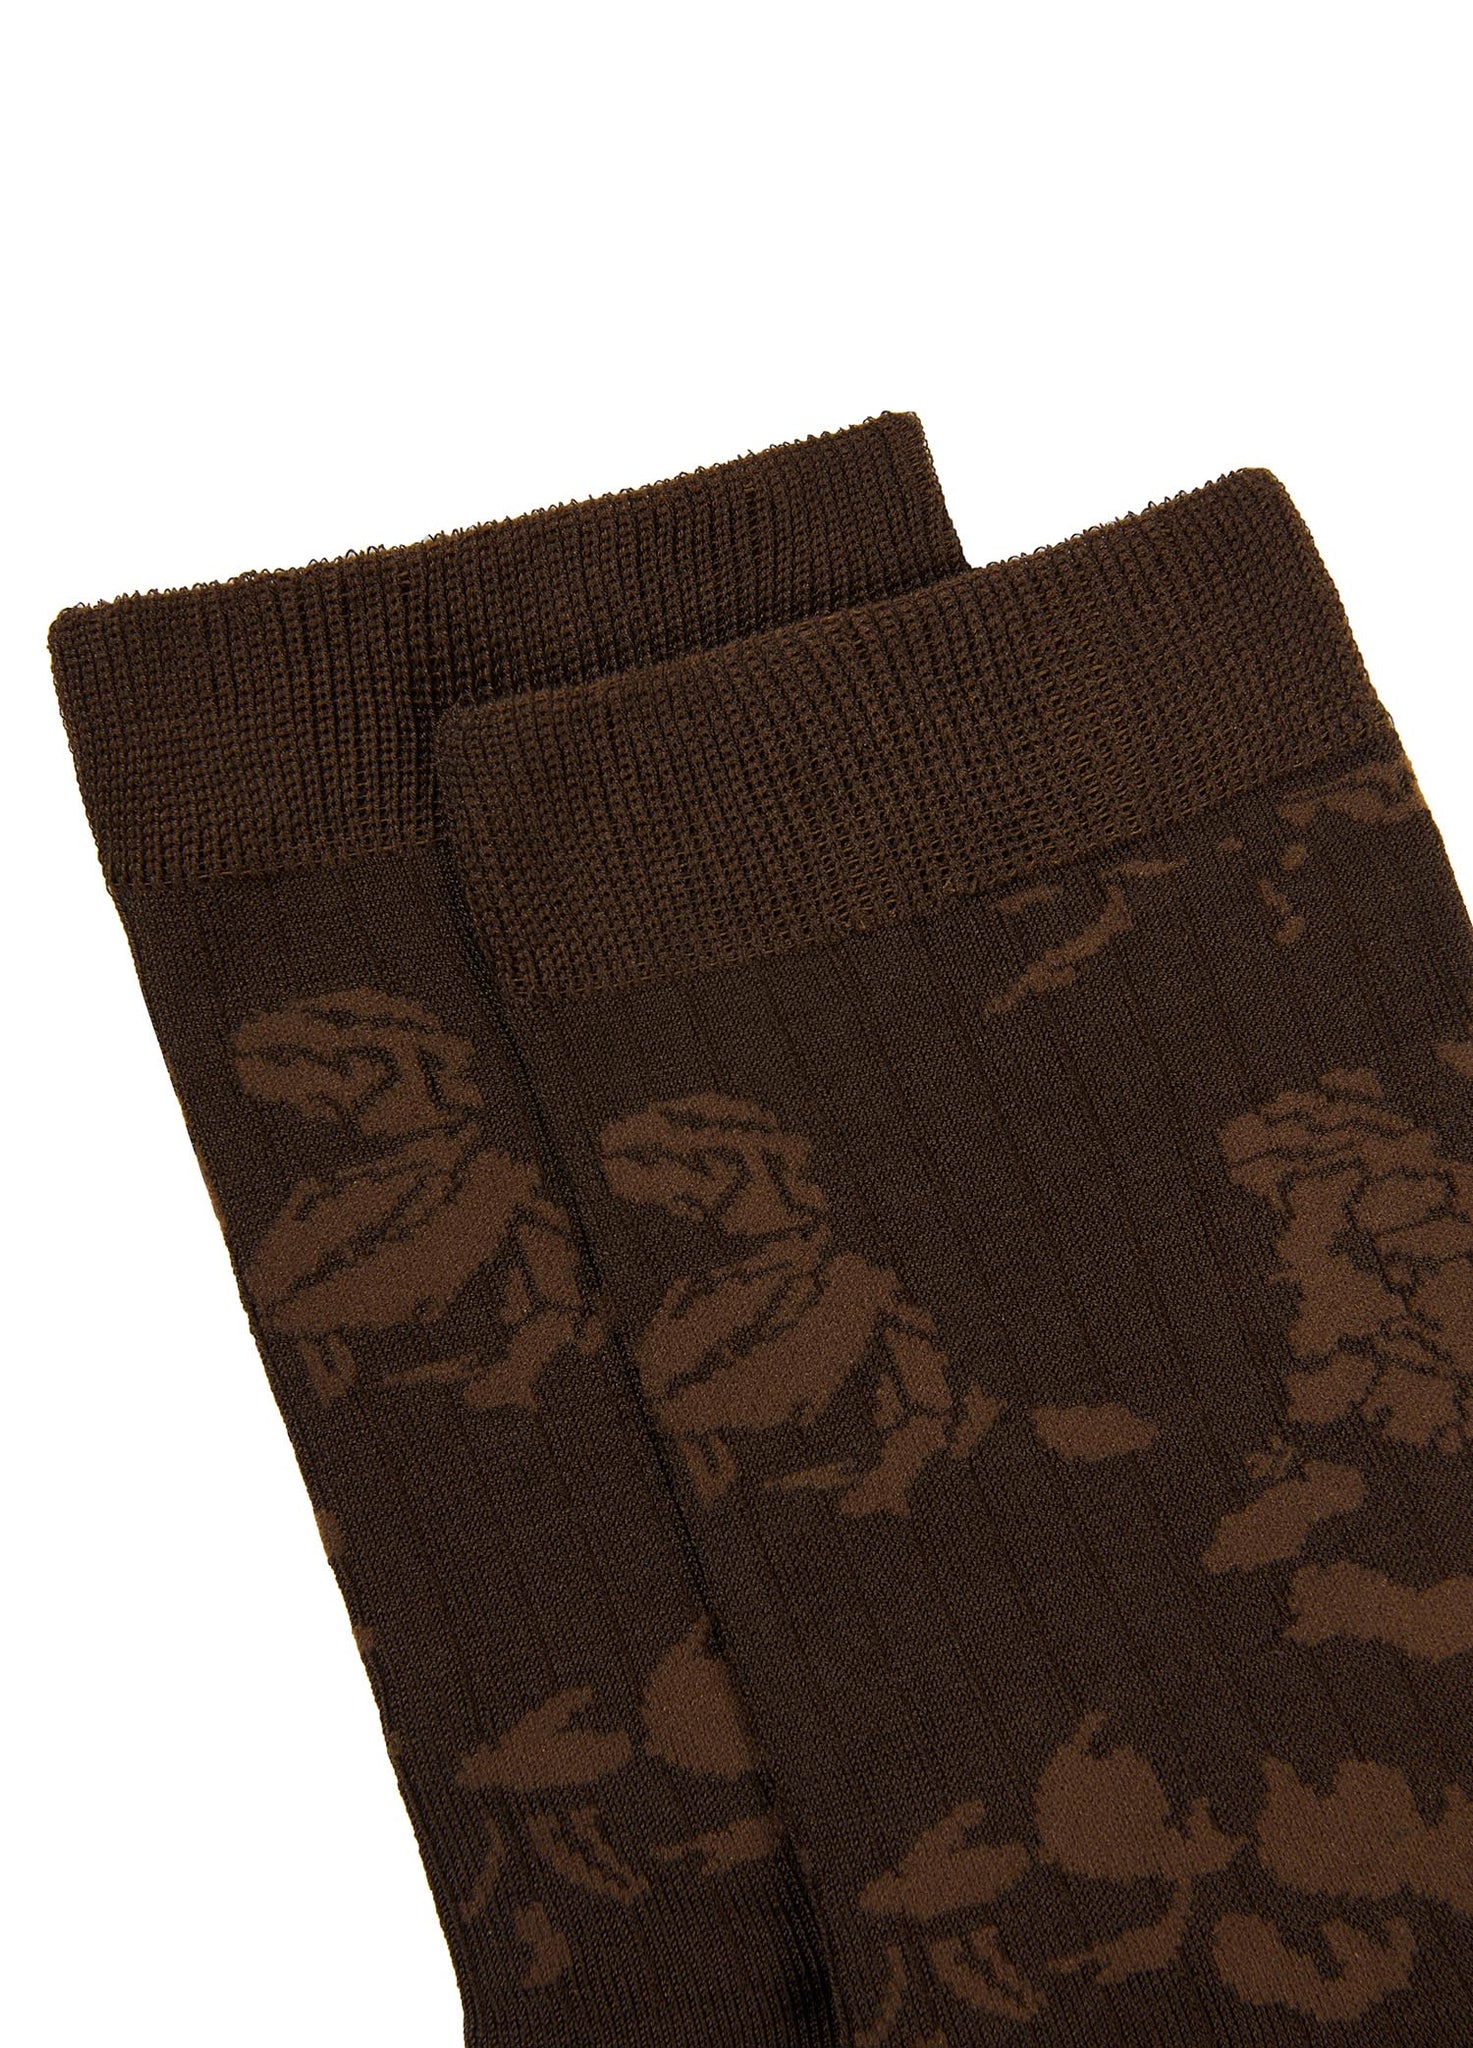 Socks / JNBY Dark Patterned Socks